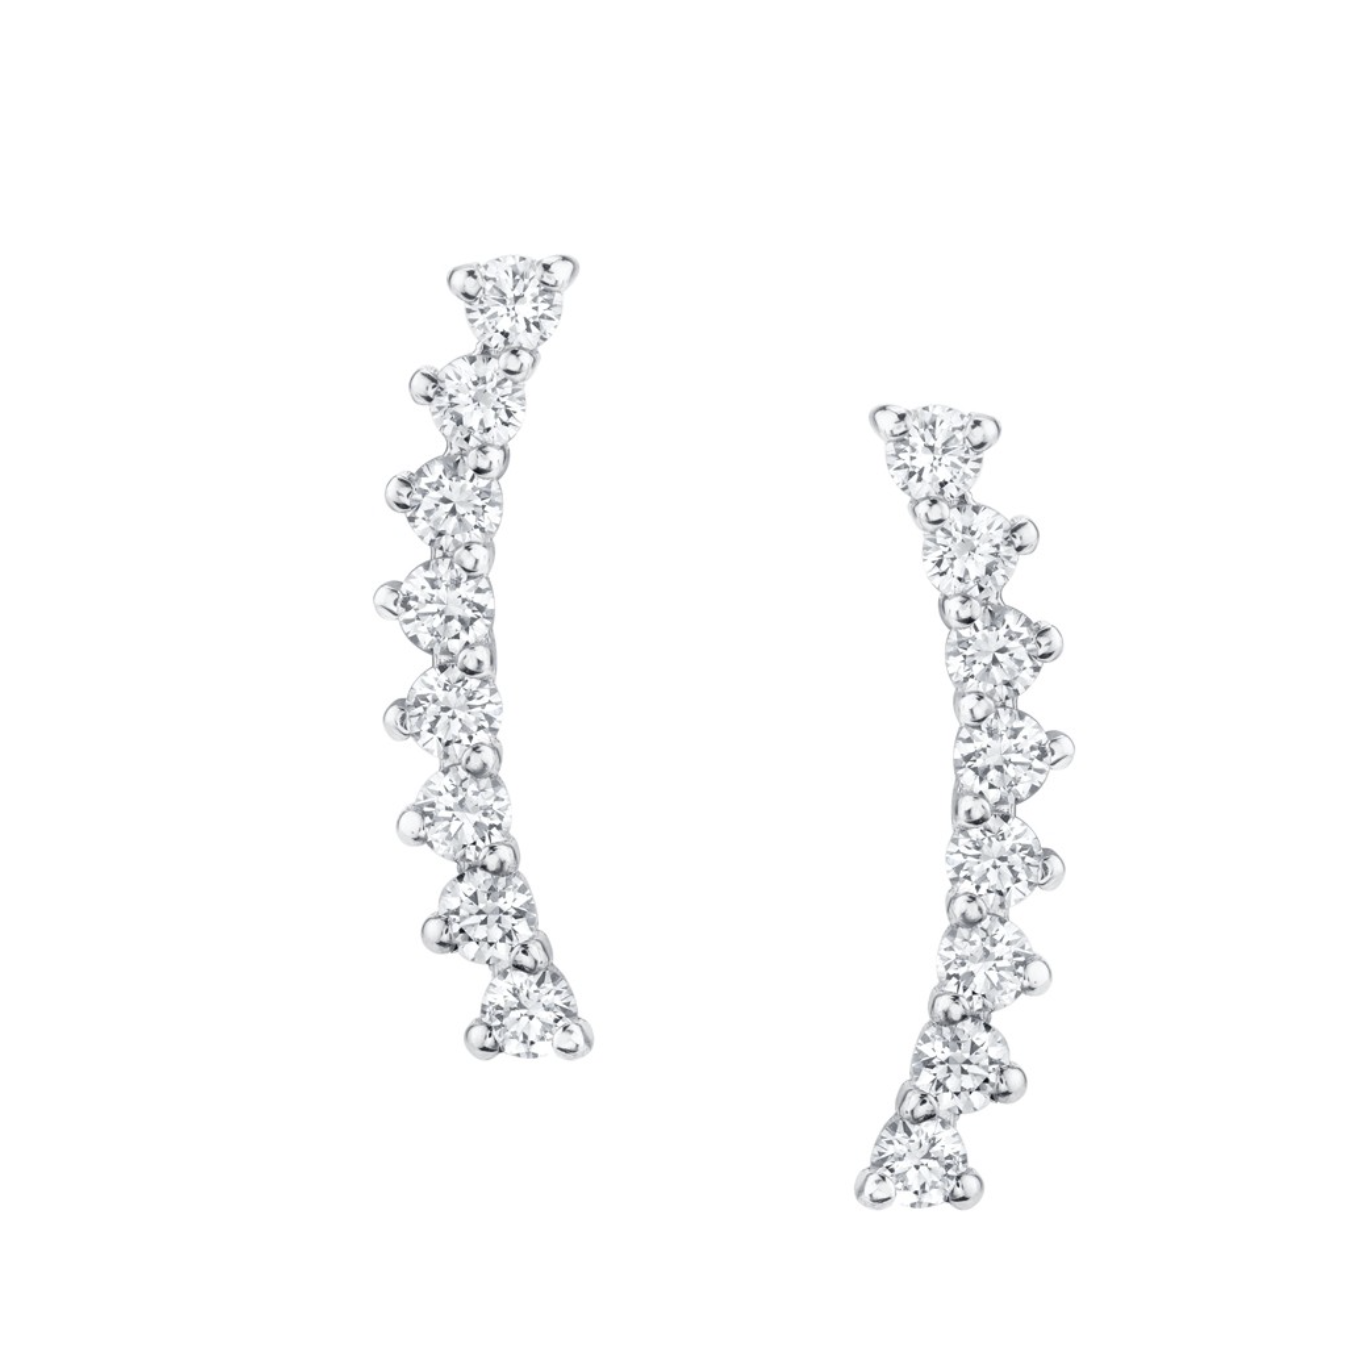 Upward Diamond Earrings